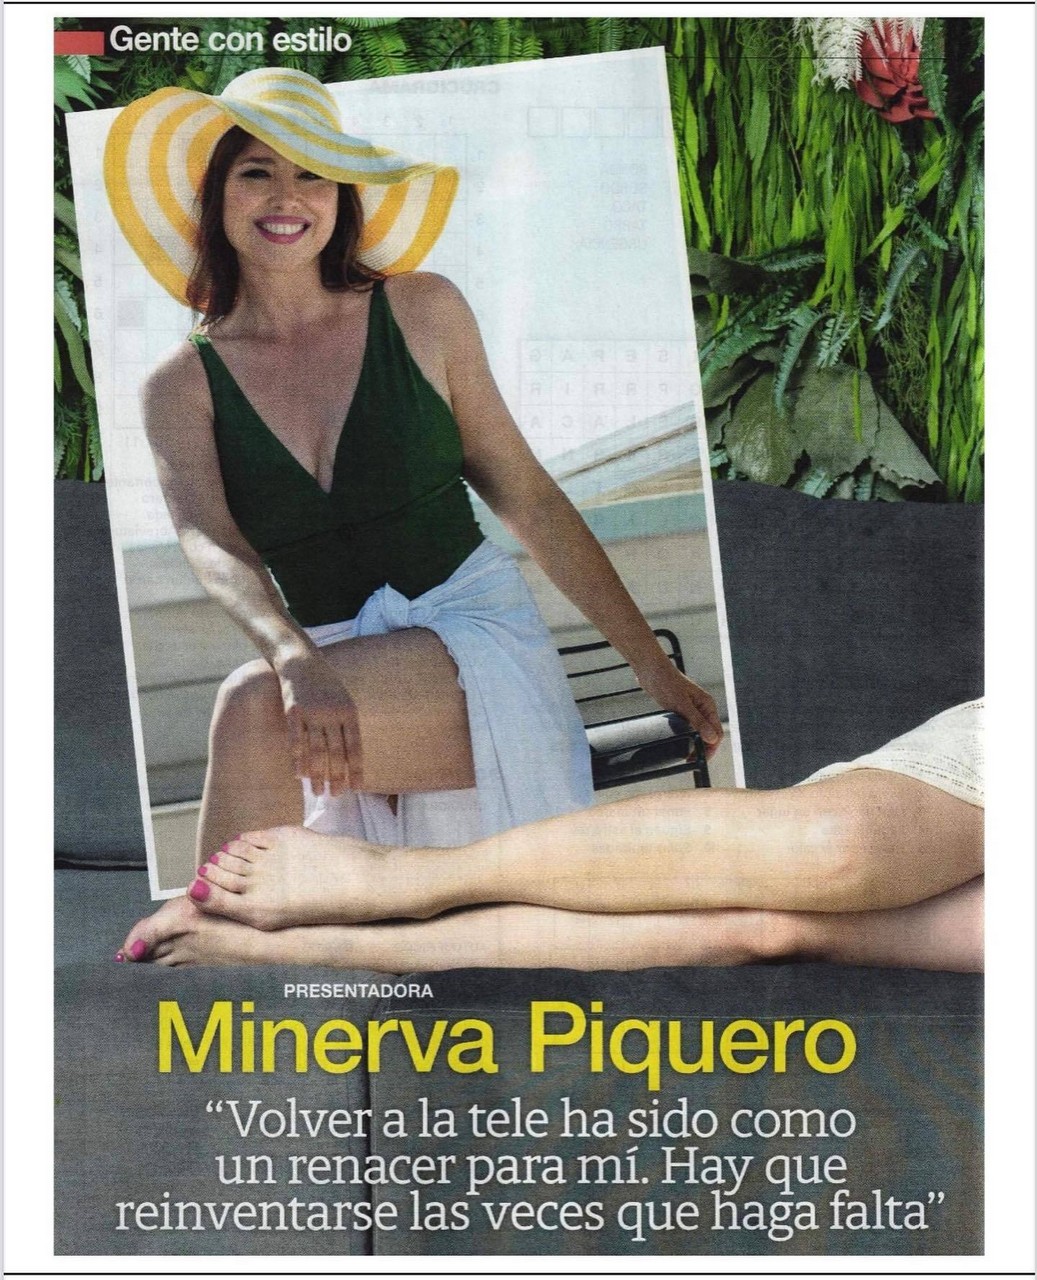 Minerva Piquero Wikifee